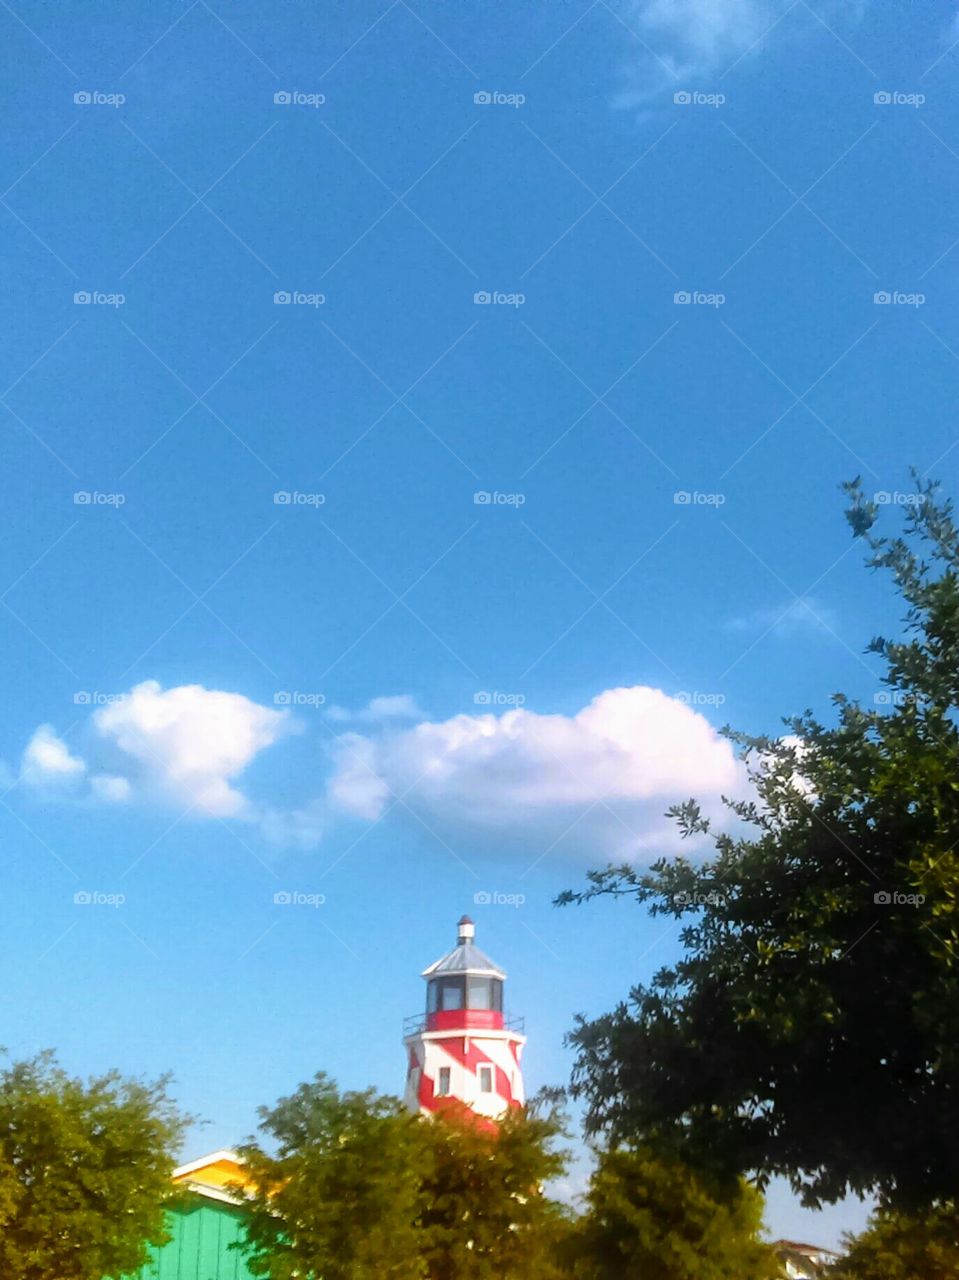 Light house and beautiful blue sky